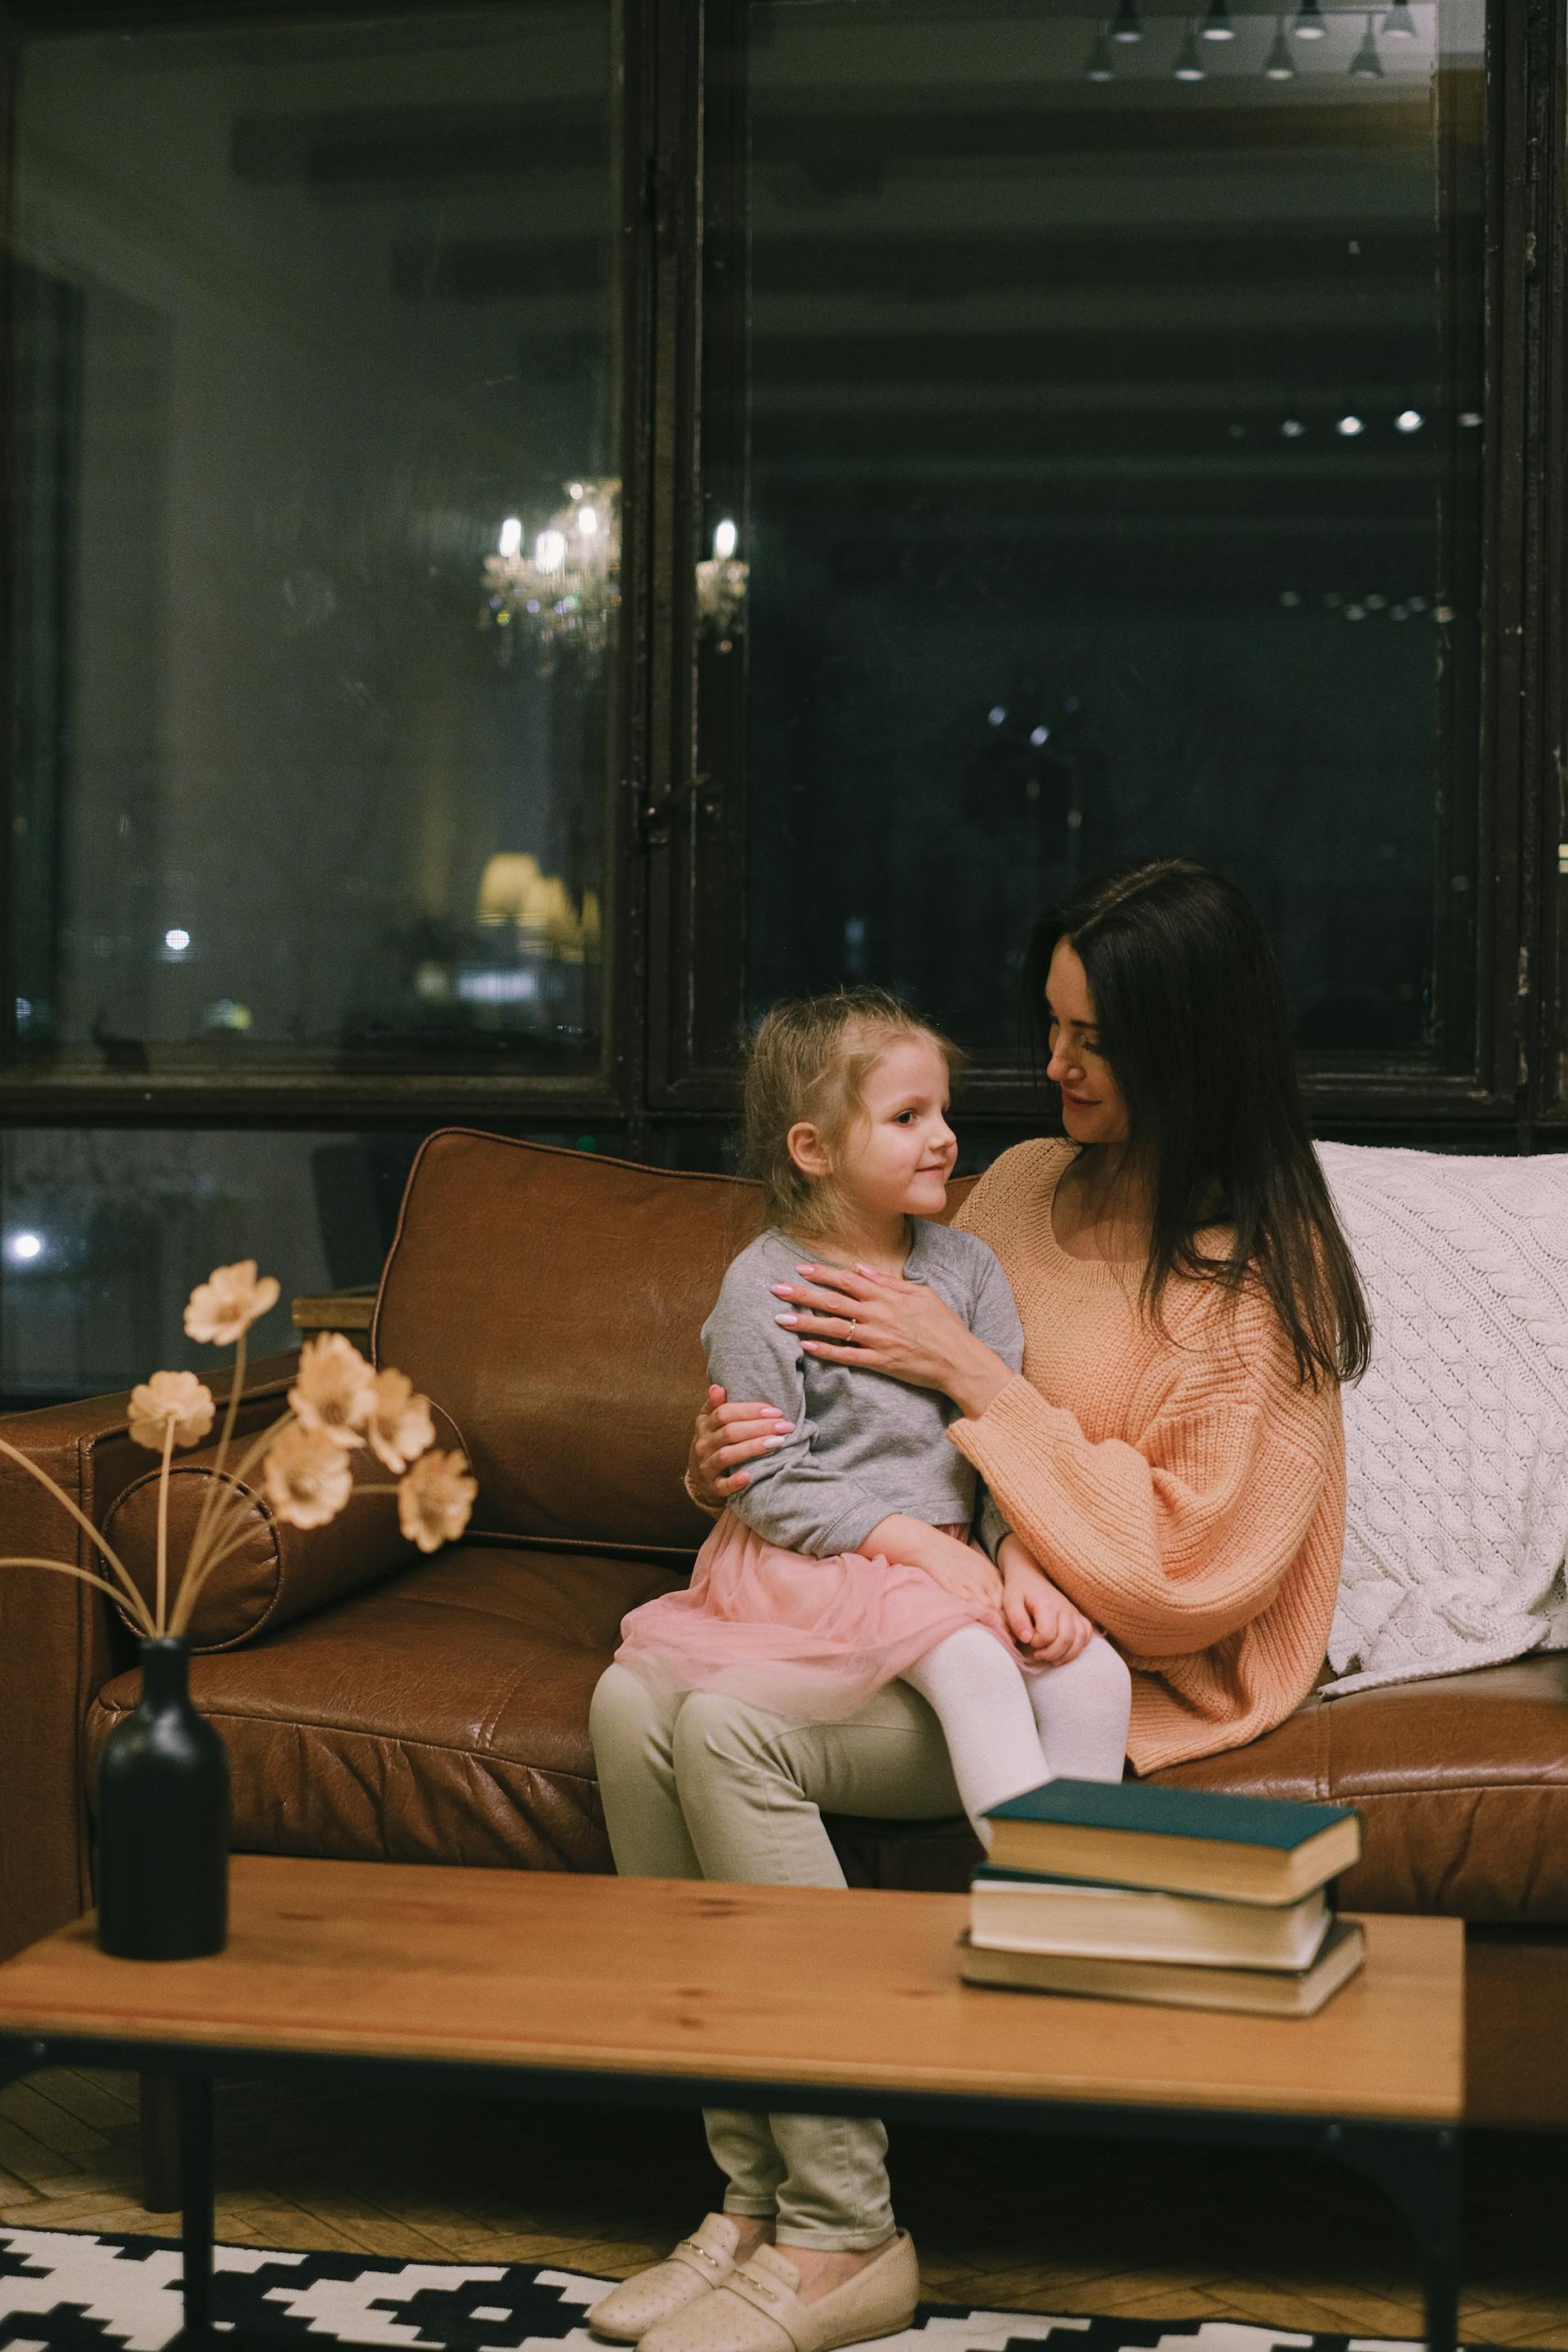 Une petite fille assise sur les genoux de sa mère | Source : Pexels